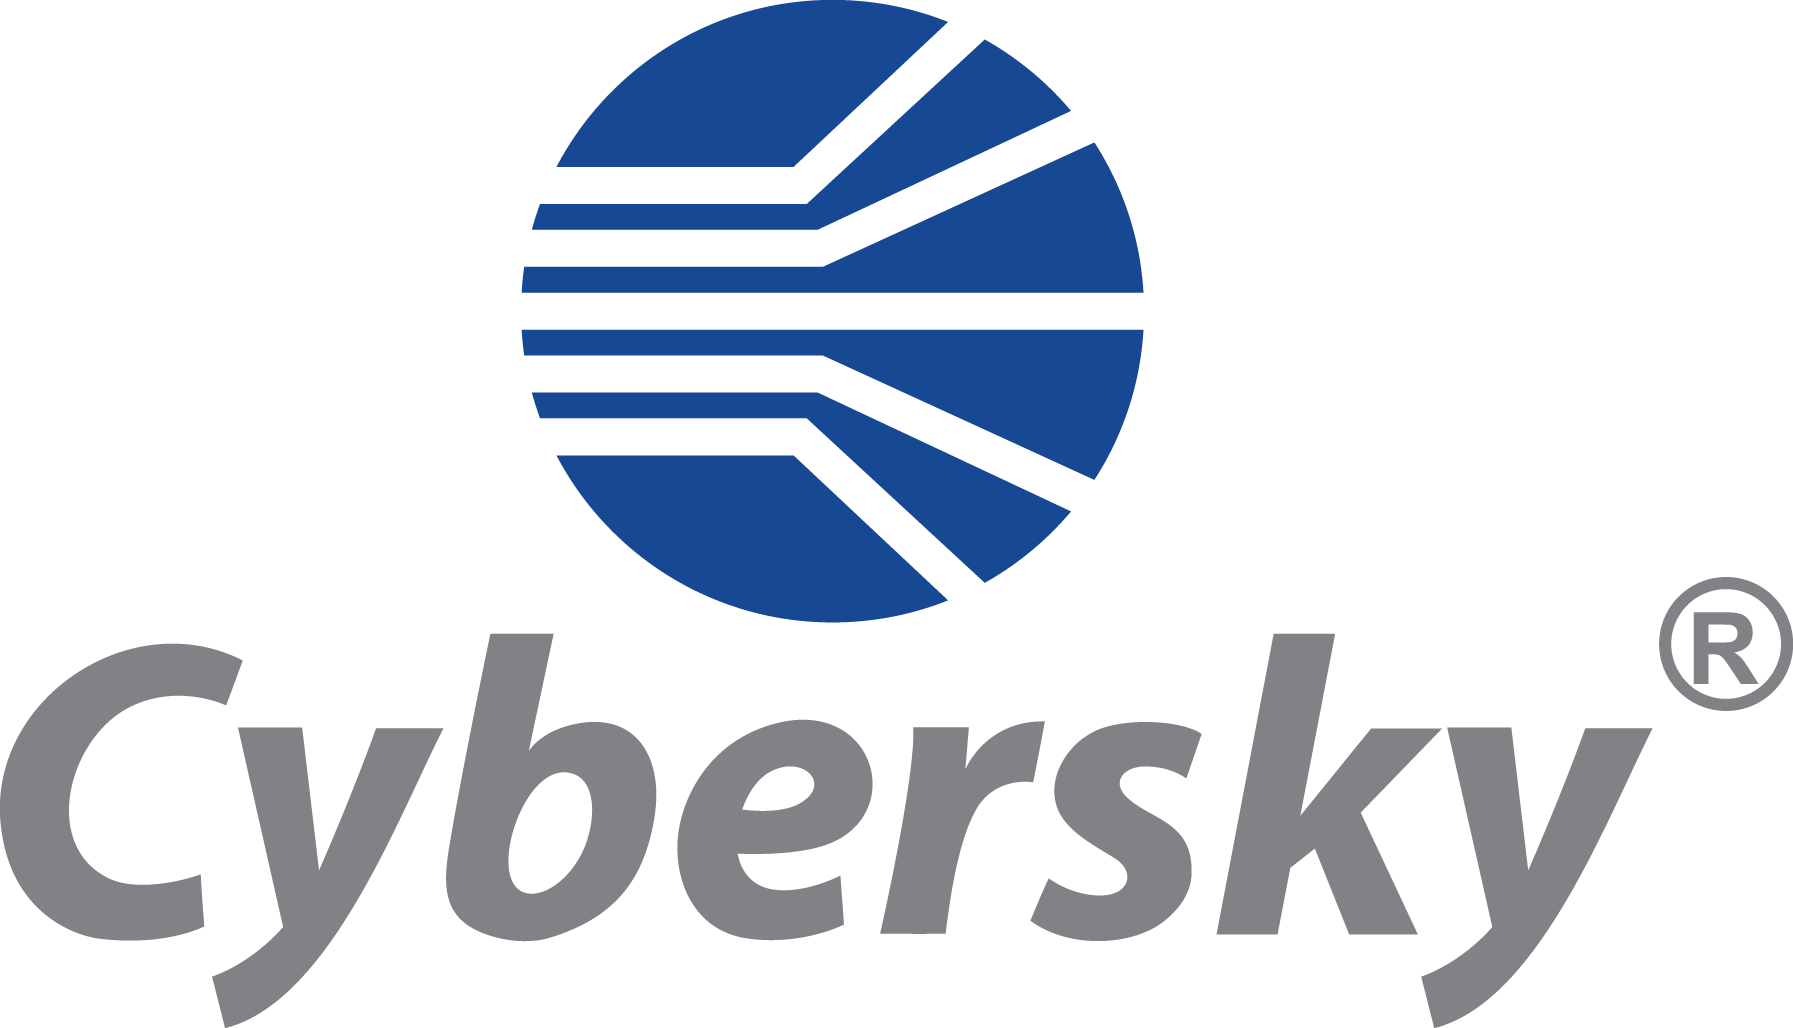 Cybersky